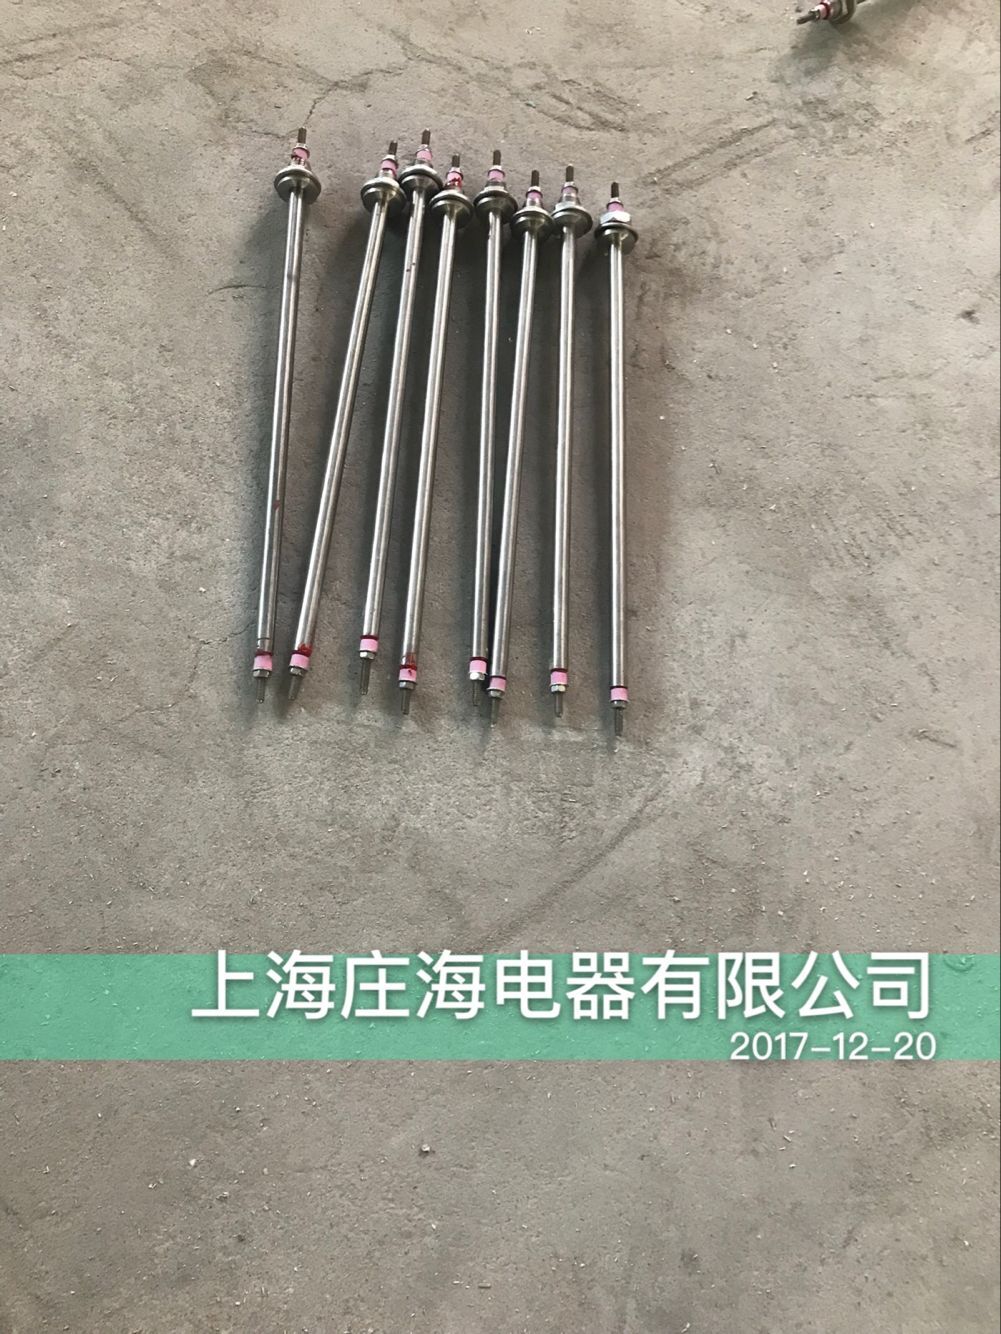 上海庄海电器 U 异 型电热管 支持非标定做